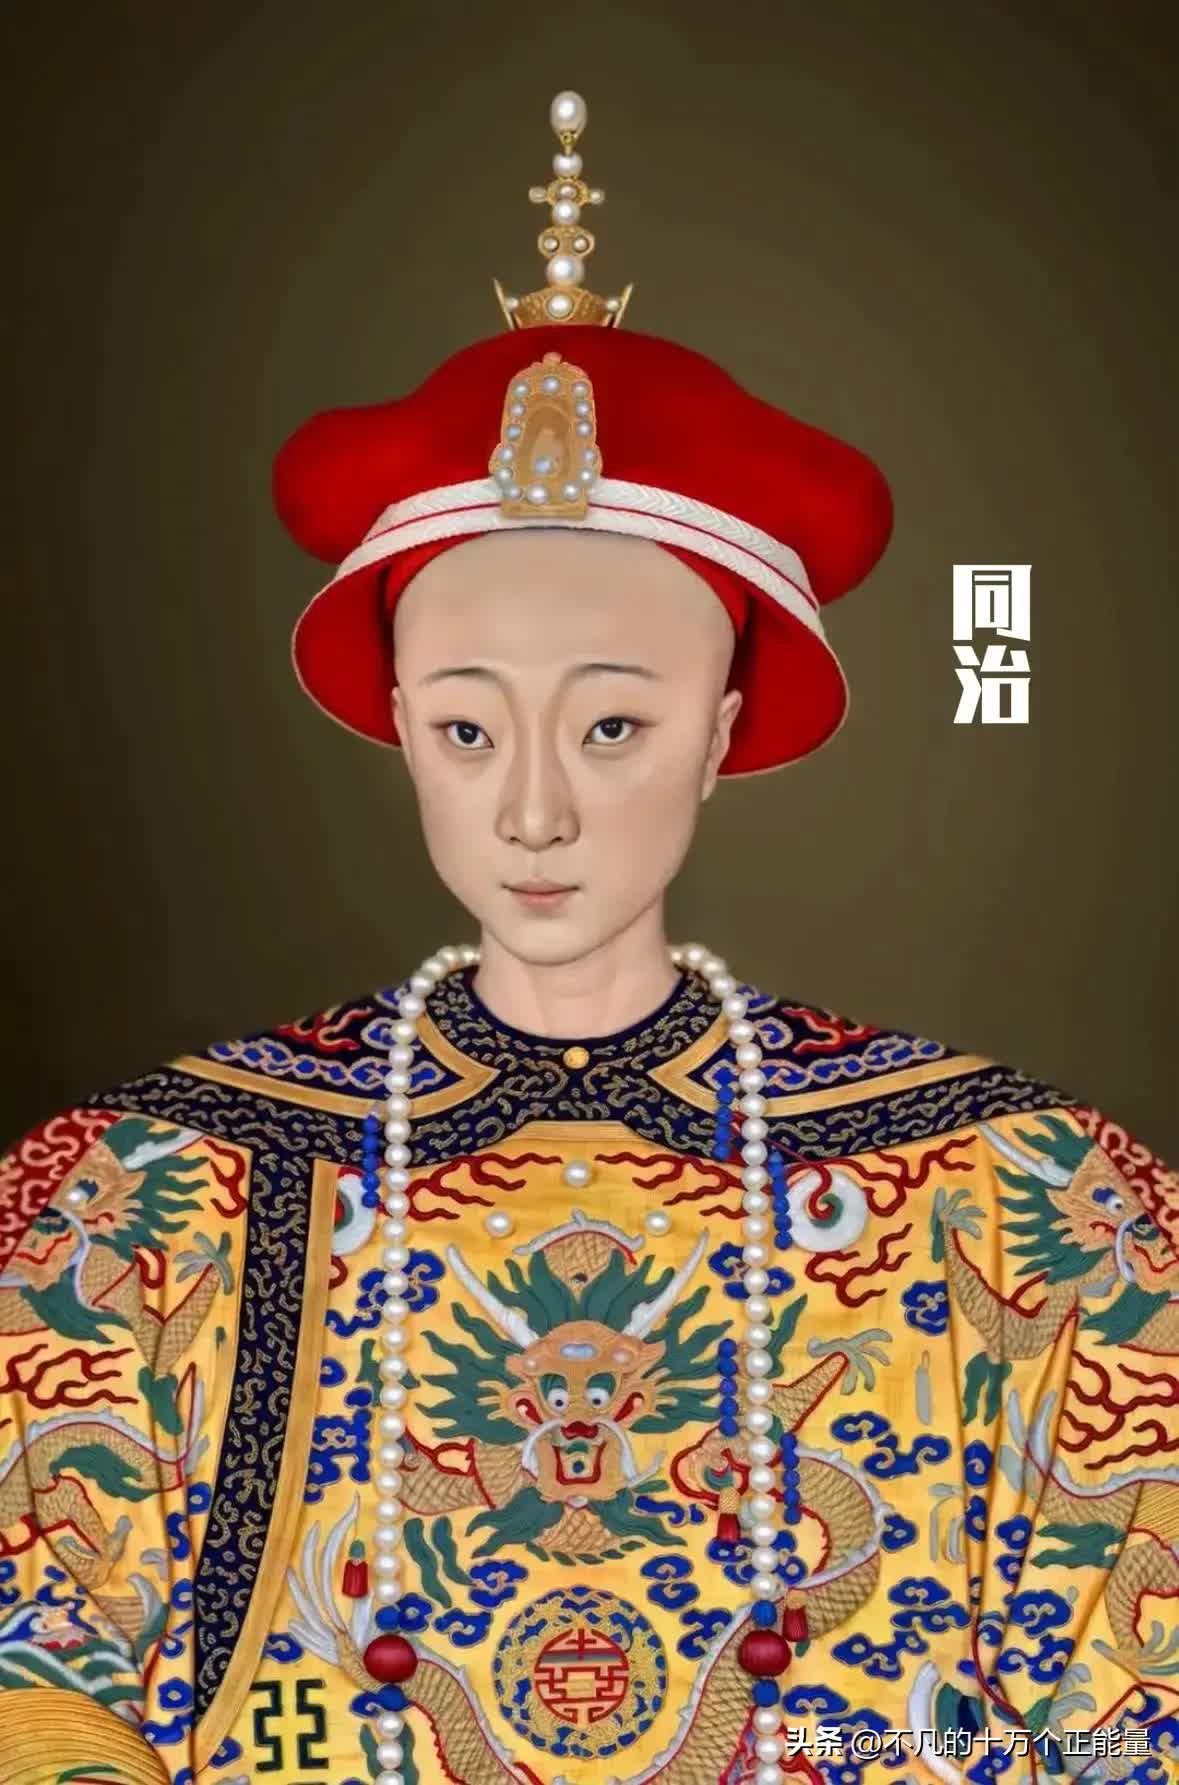 AI thêm màu vào chân dung 12 vị Hoàng đế nhà Thanh: Bất ngờ nhan sắc "đấng lang quân" của Từ Hi Thái hậu- Ảnh 20.